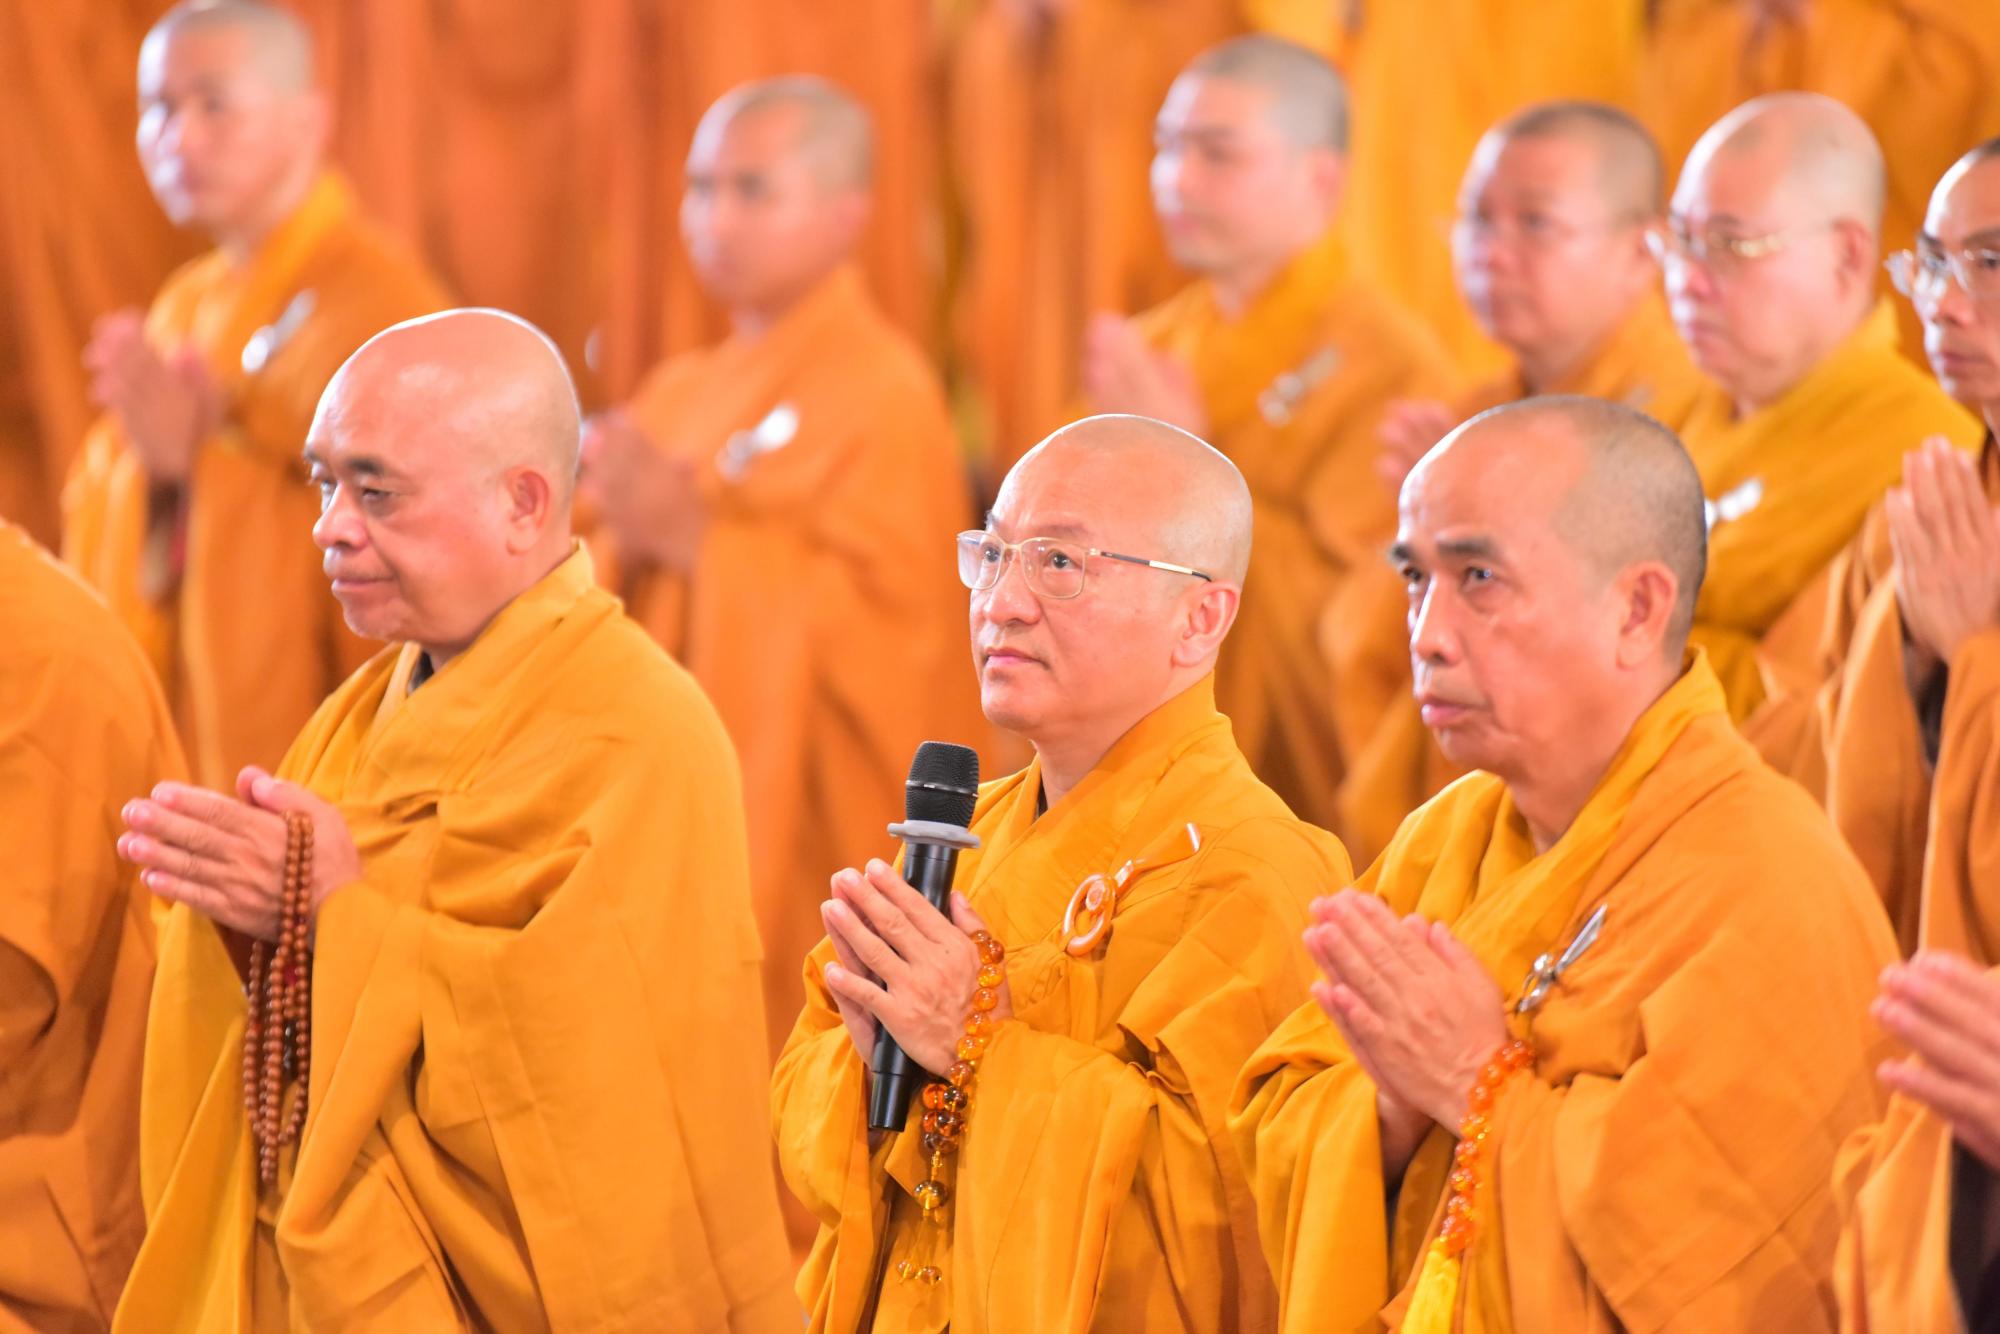 Thời pháp thoại đầu tiên trong khóa huân tu 10 ngày tại Học viện Phật giáo Việt Nam tại TP.HCM